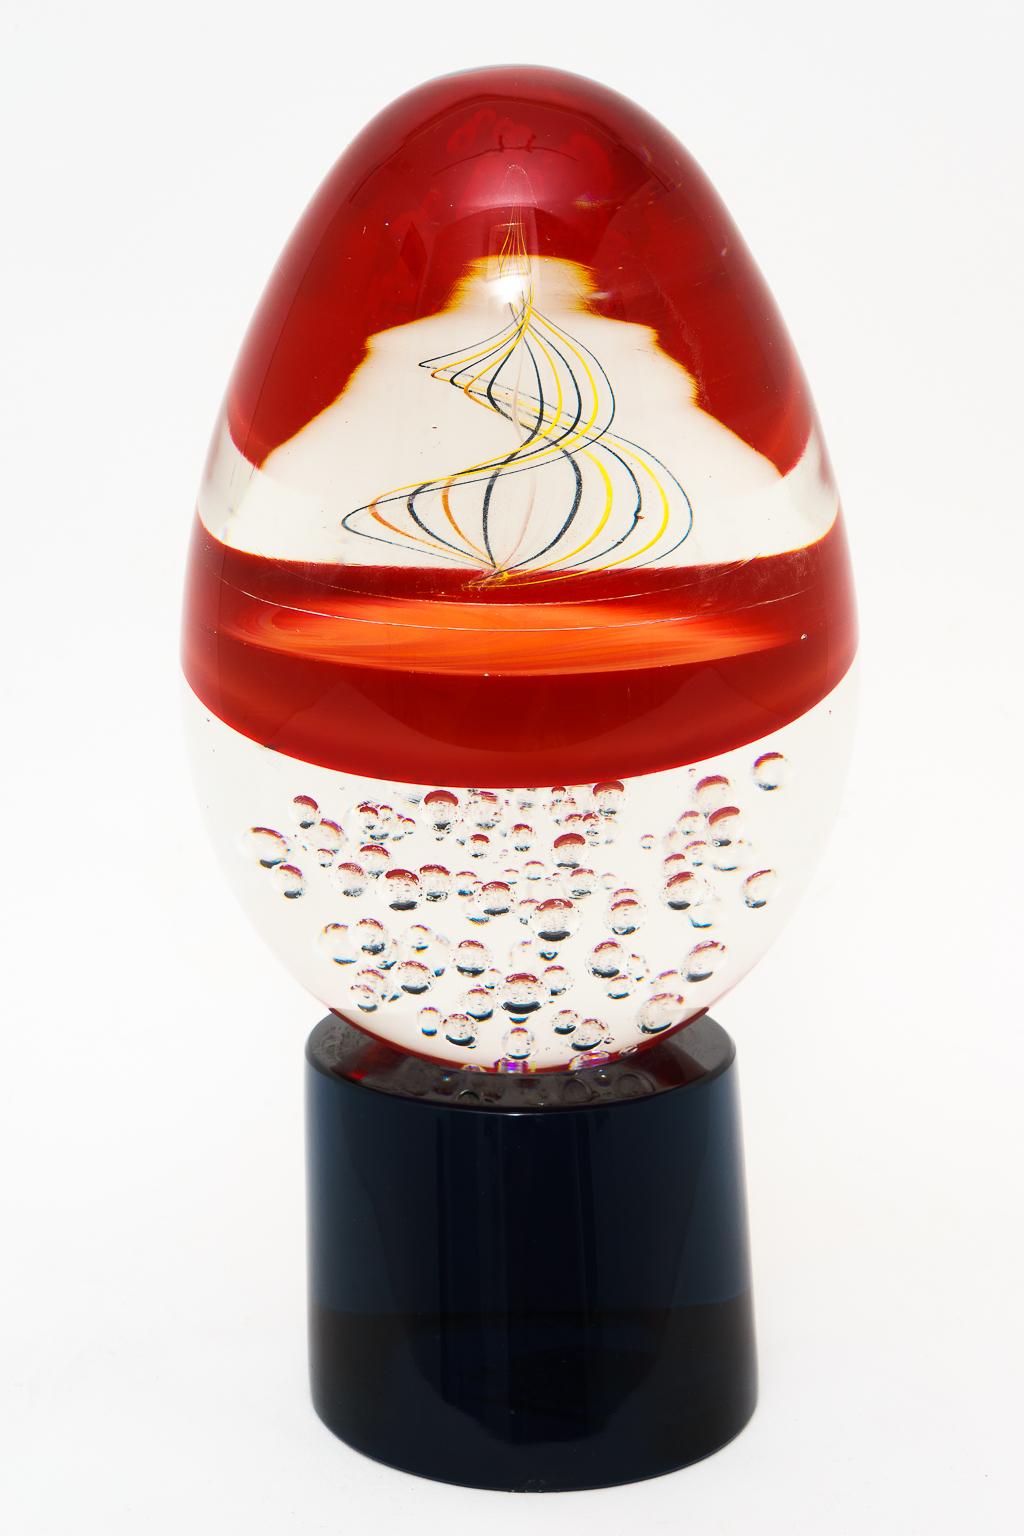 Modern Oggetti Murano Egg Form Sculpture by Artisans Elio Raffaeli & Roberto Cammozzo